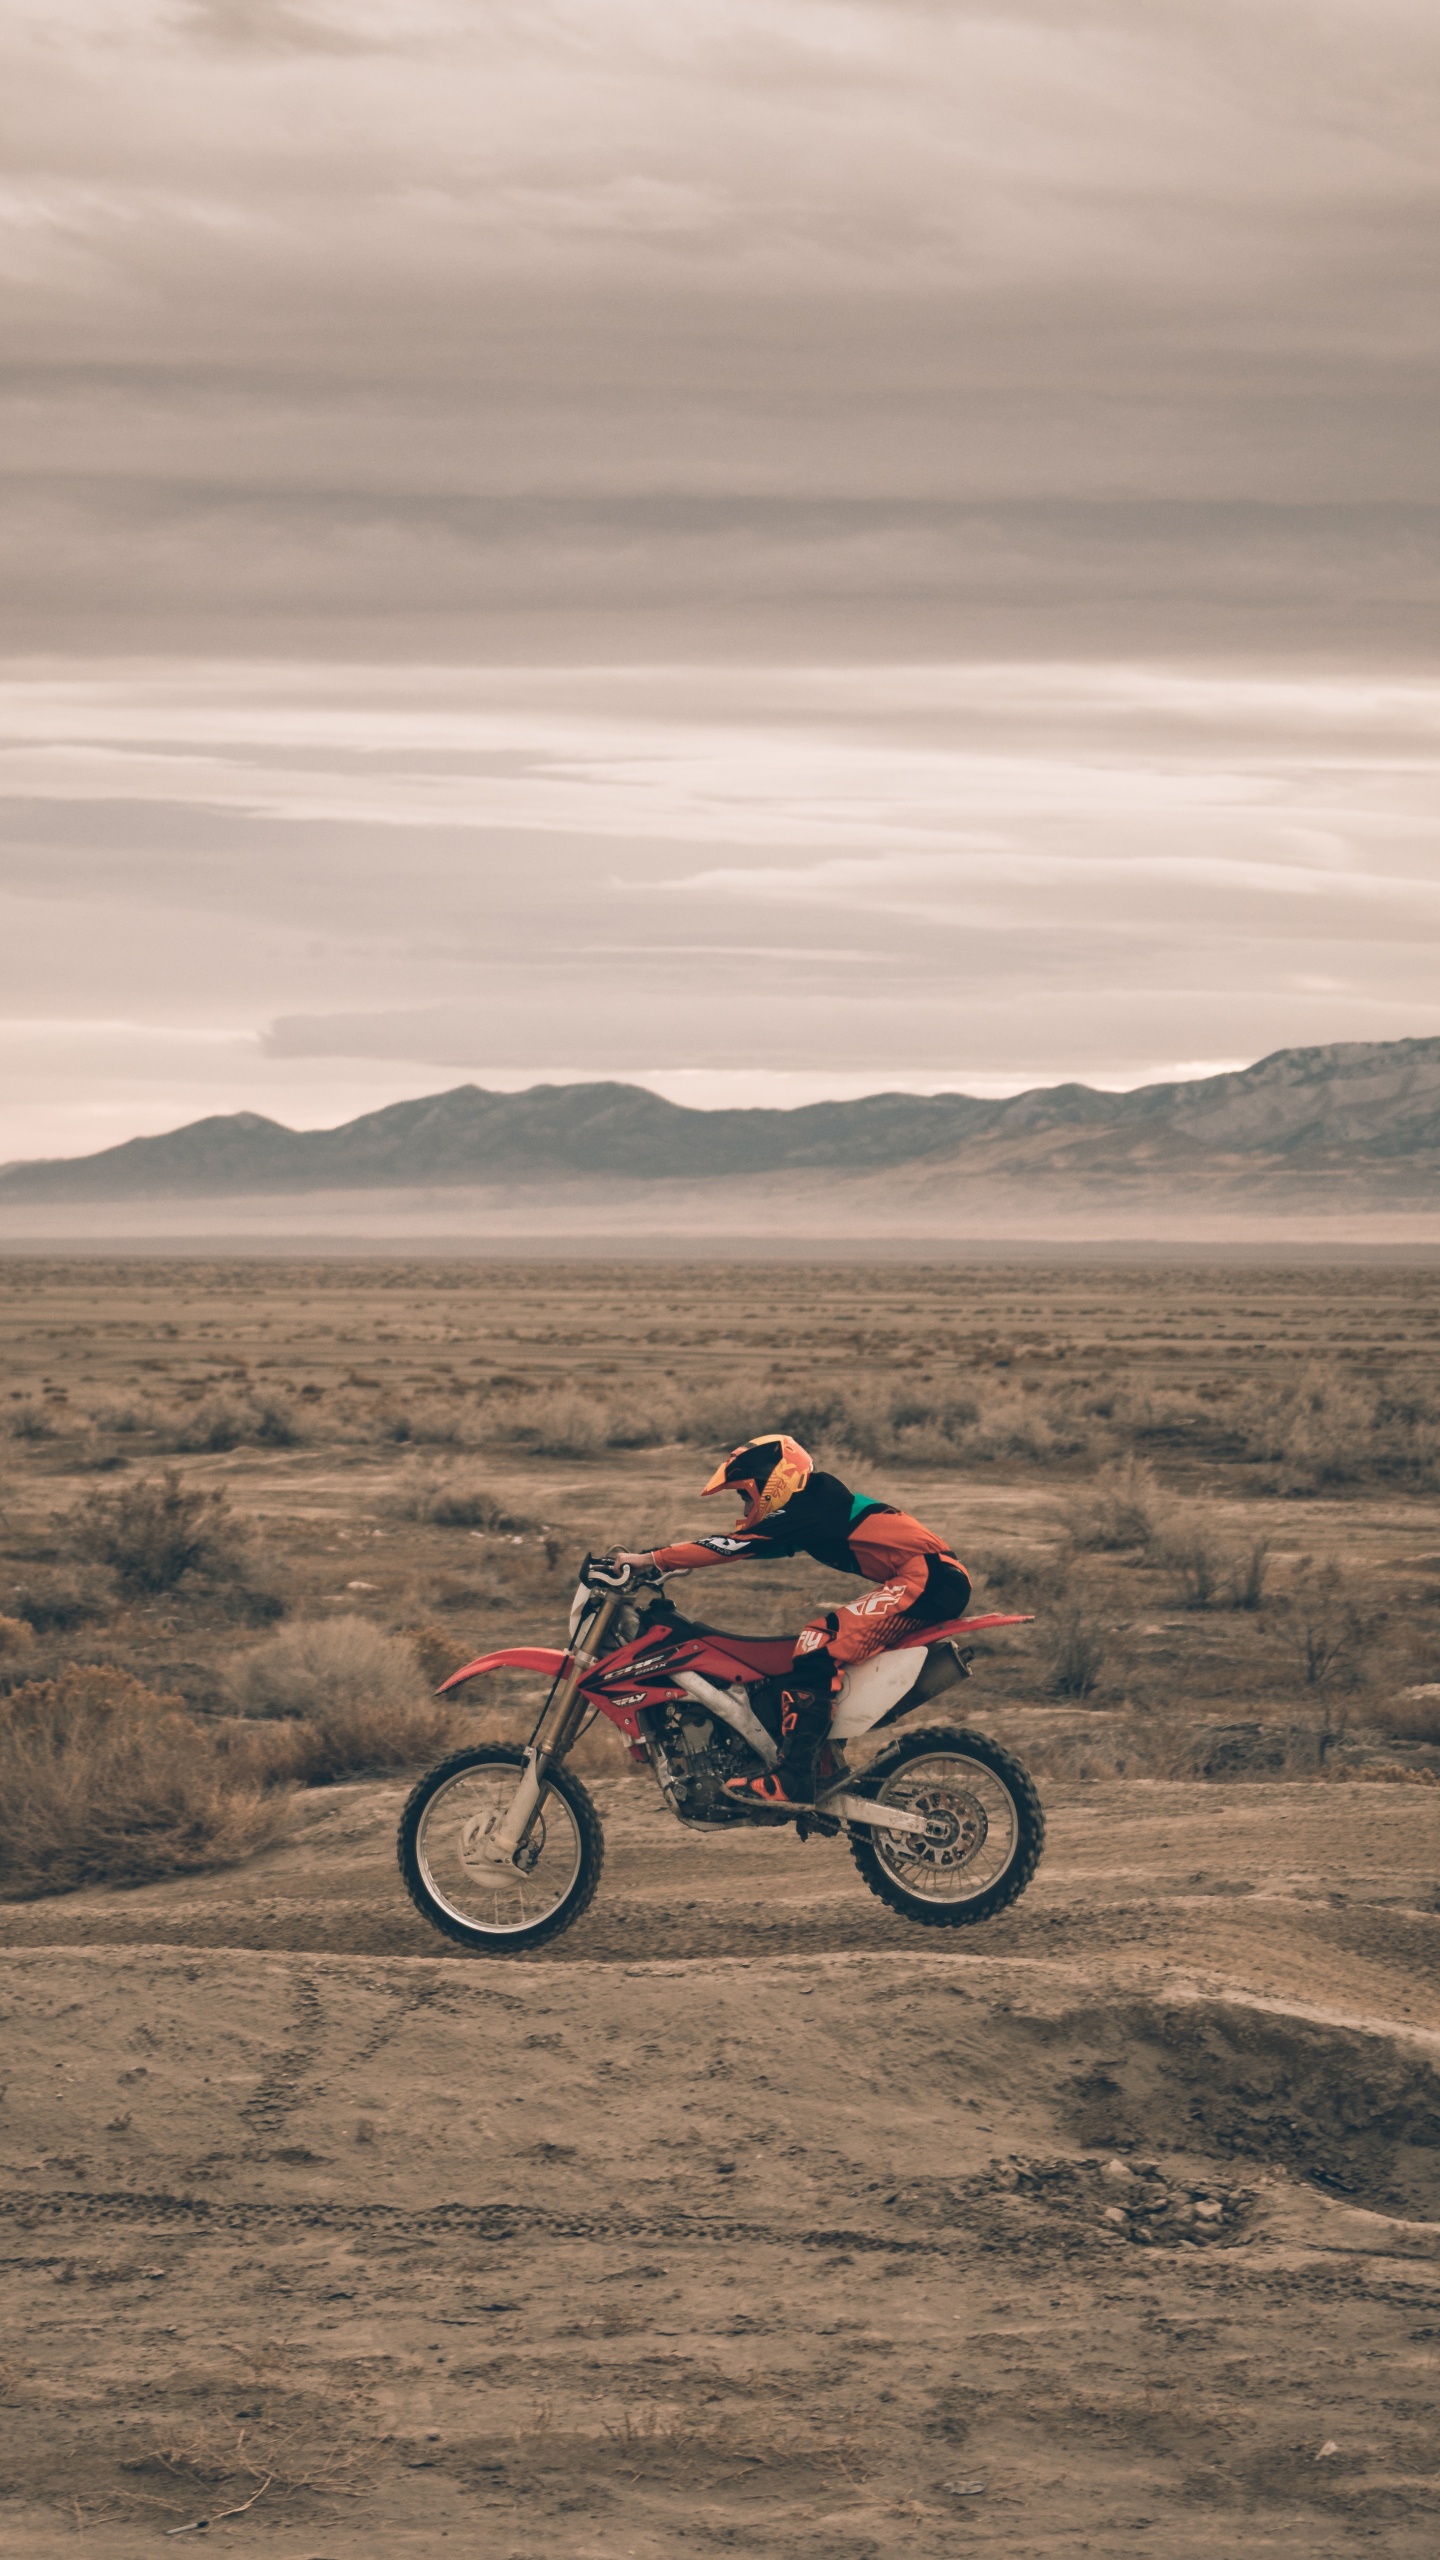 Hombre de Chaqueta Roja en Motocicleta Roja en Campo Marrón Durante el Día. Wallpaper in 1440x2560 Resolution